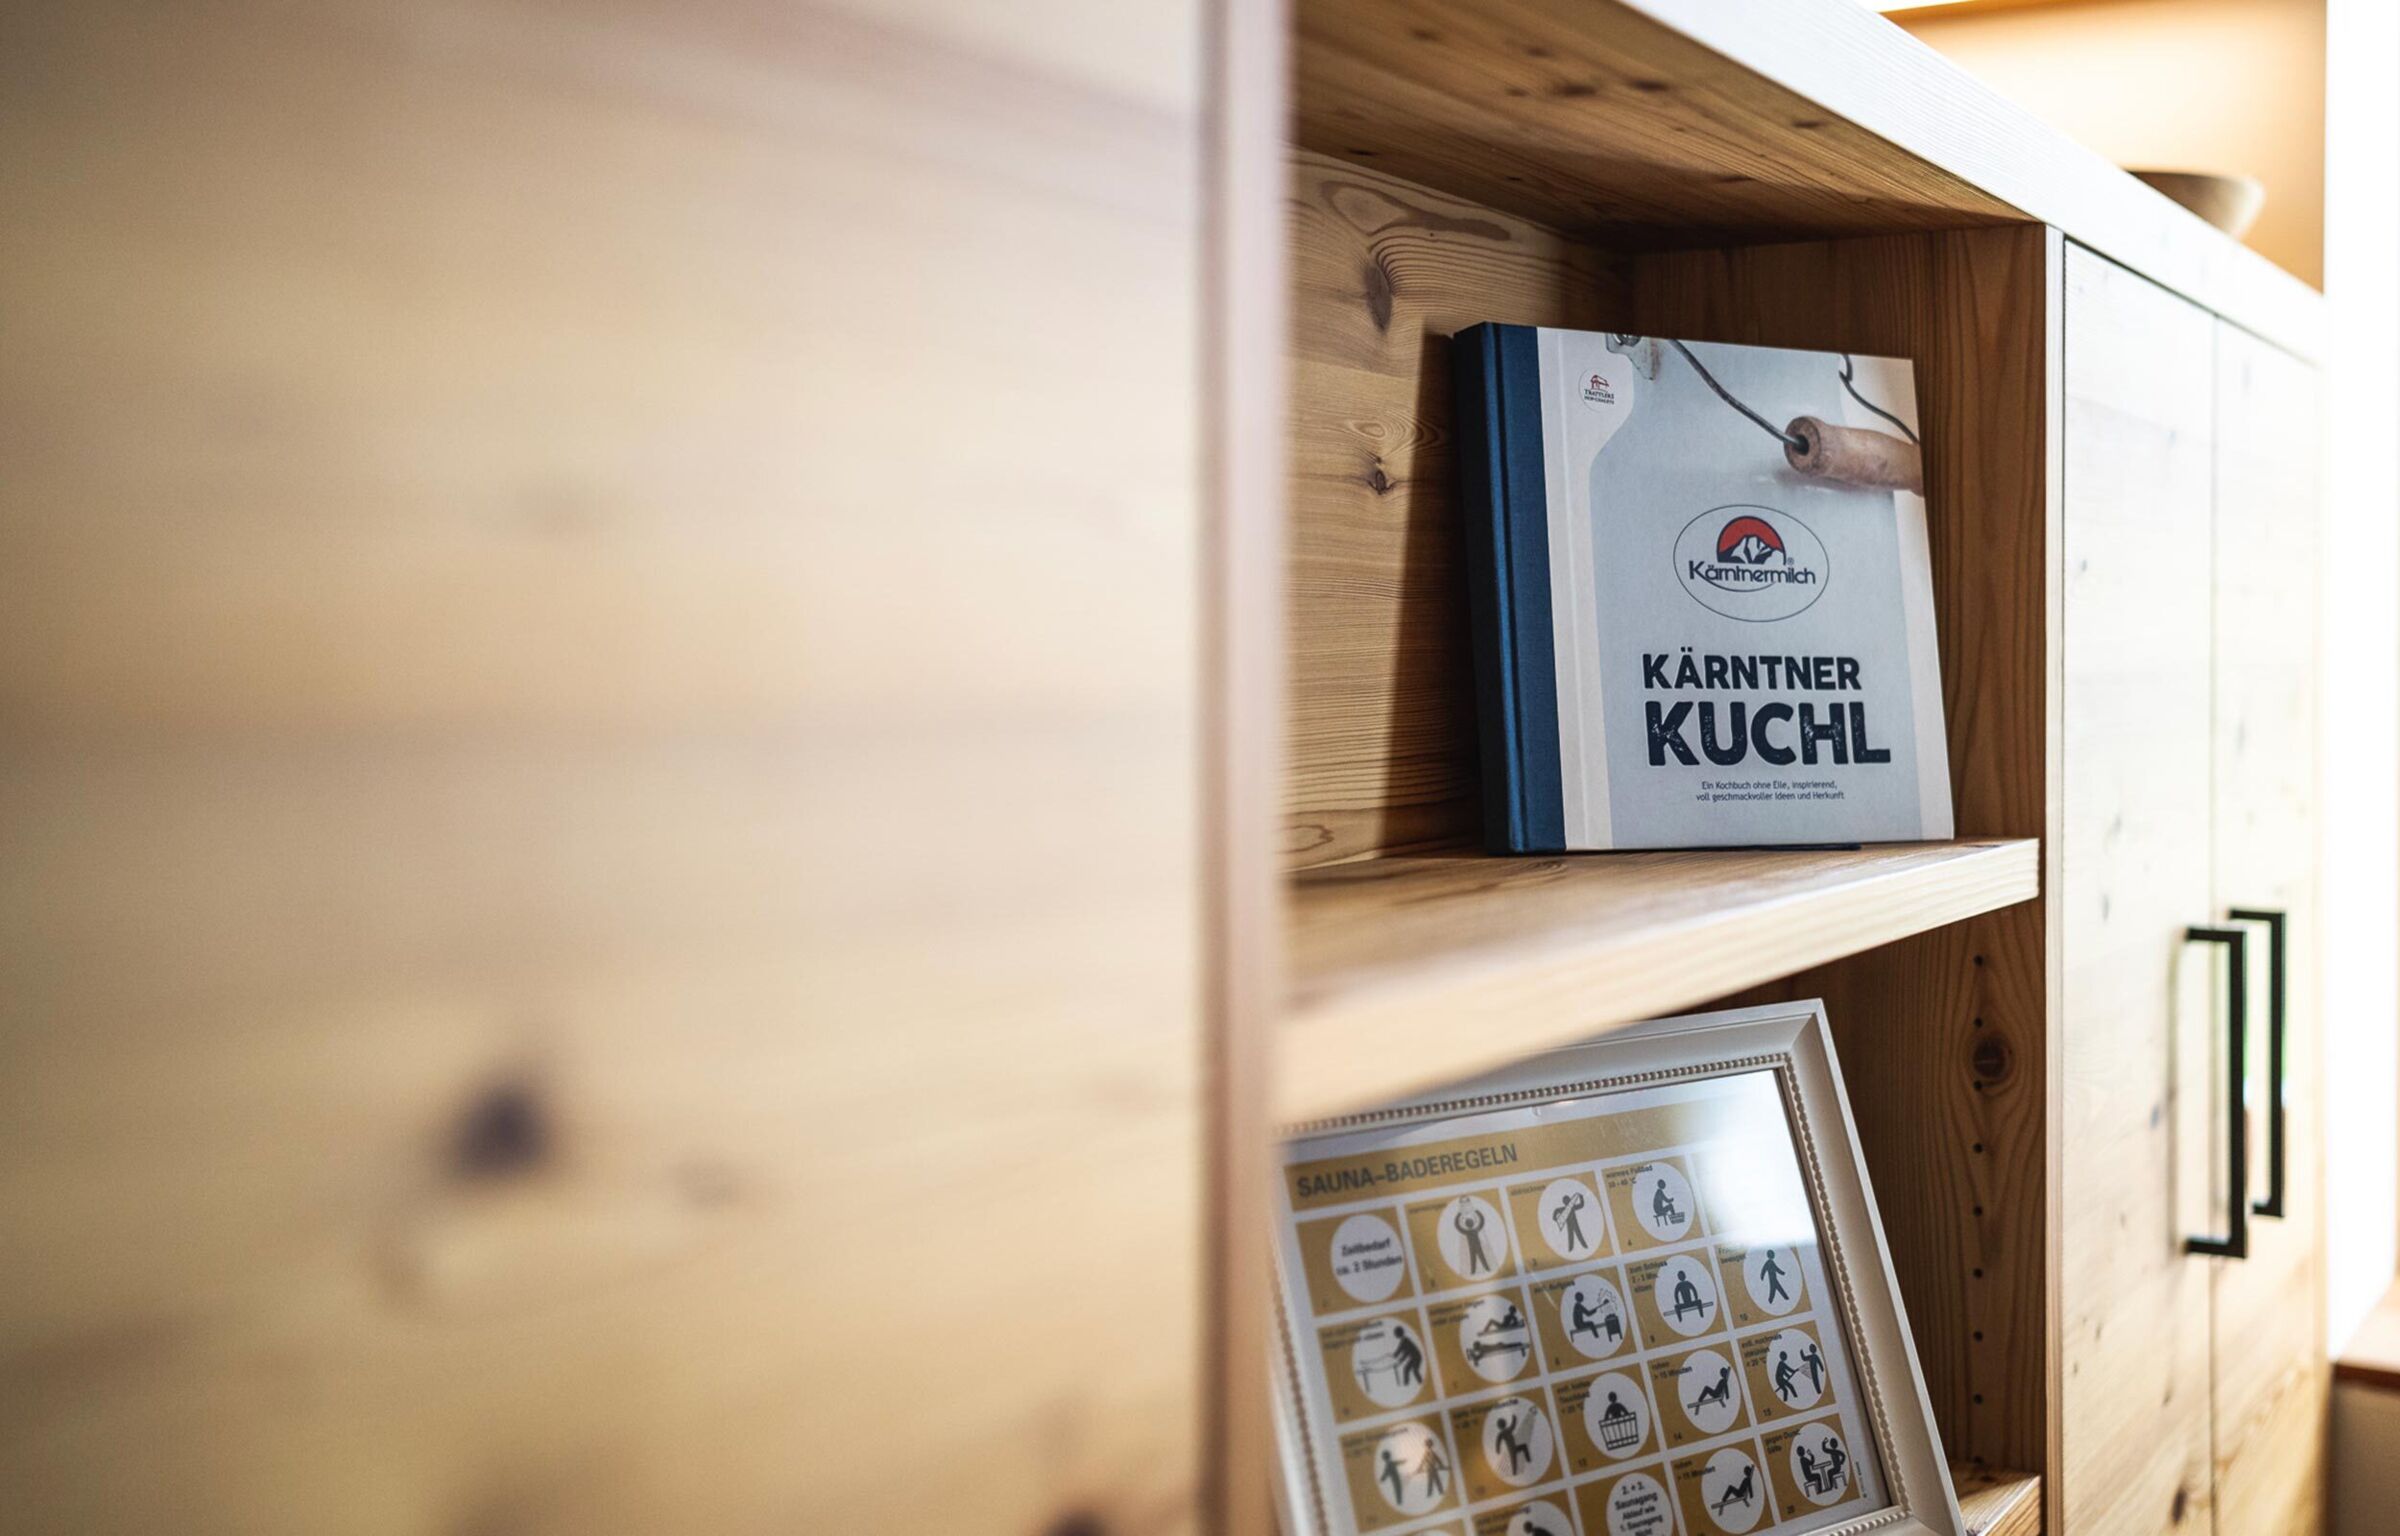 Il libro "Kärntner Kuchl" è sullo scaffale.